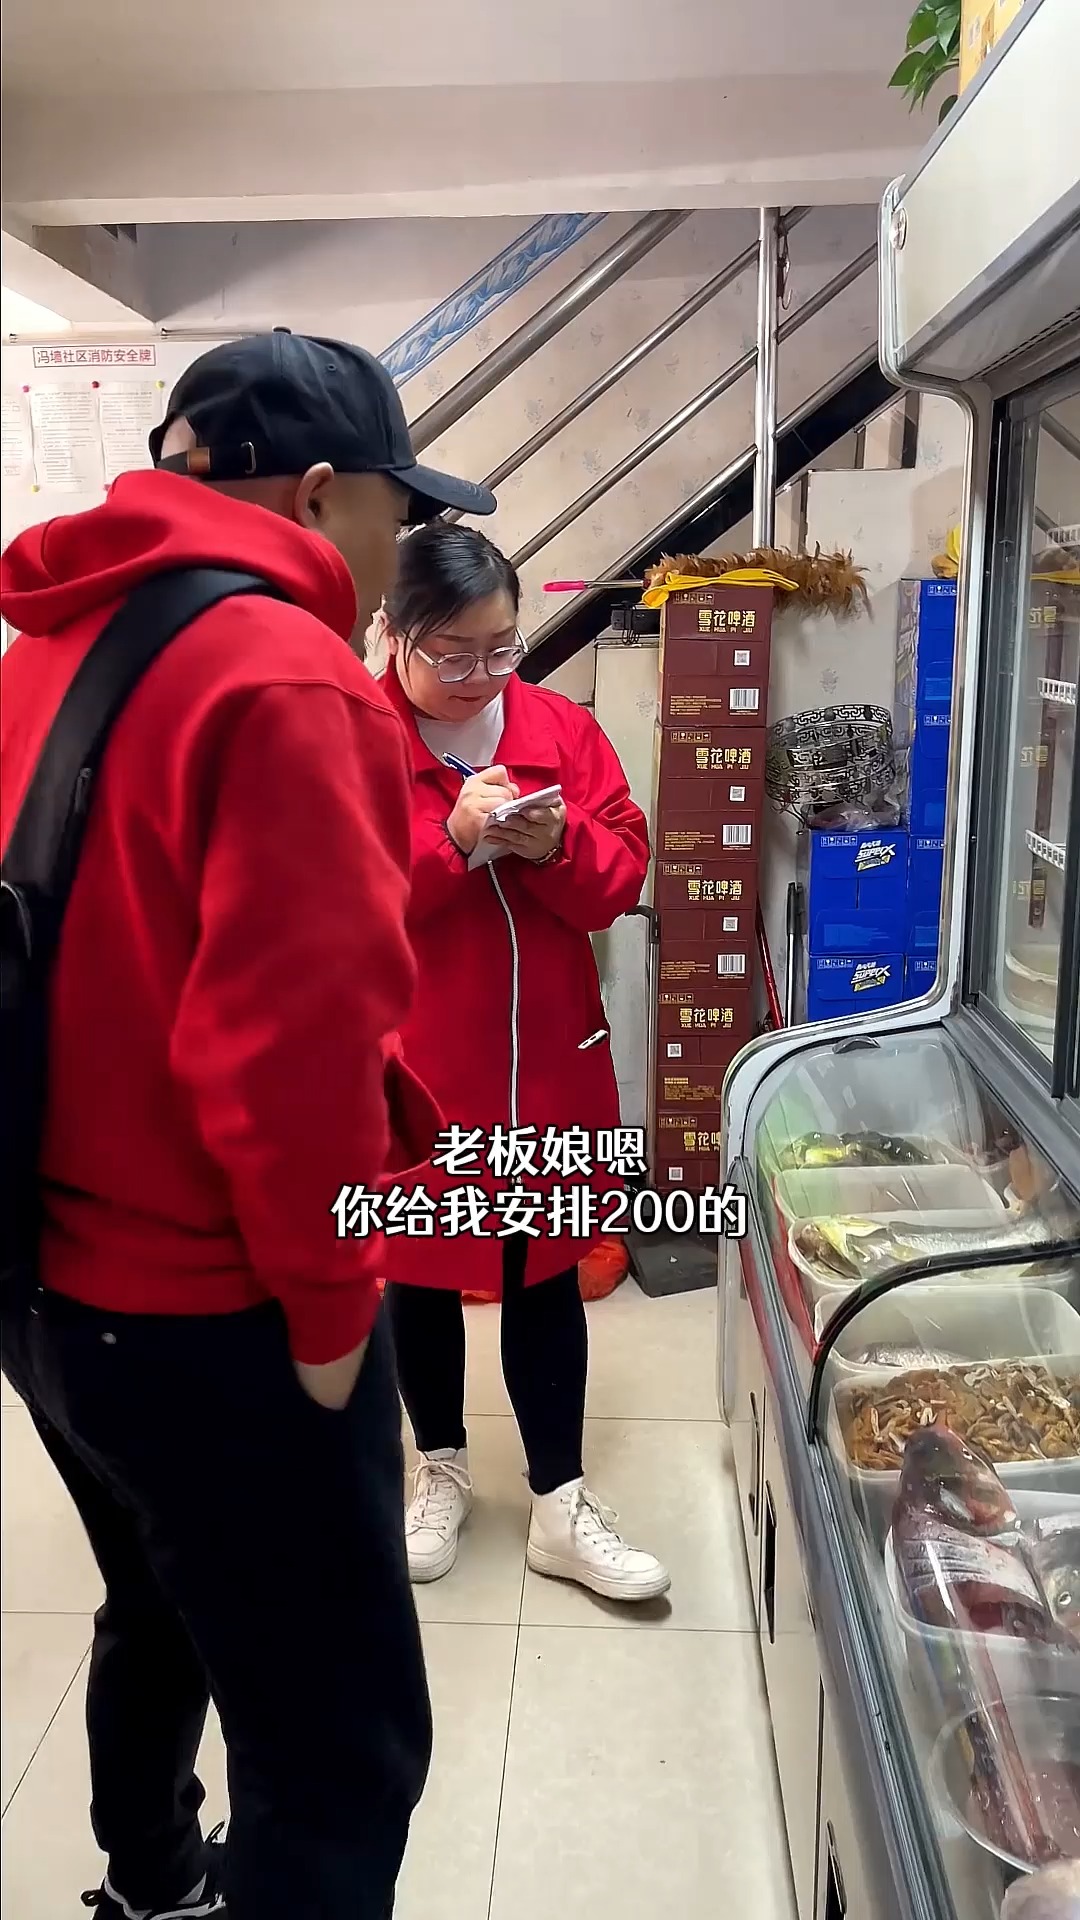 江苏南京，200元夫妻店里开盲盒，不拿手的菜很拿手。妈呀太香了第一集.